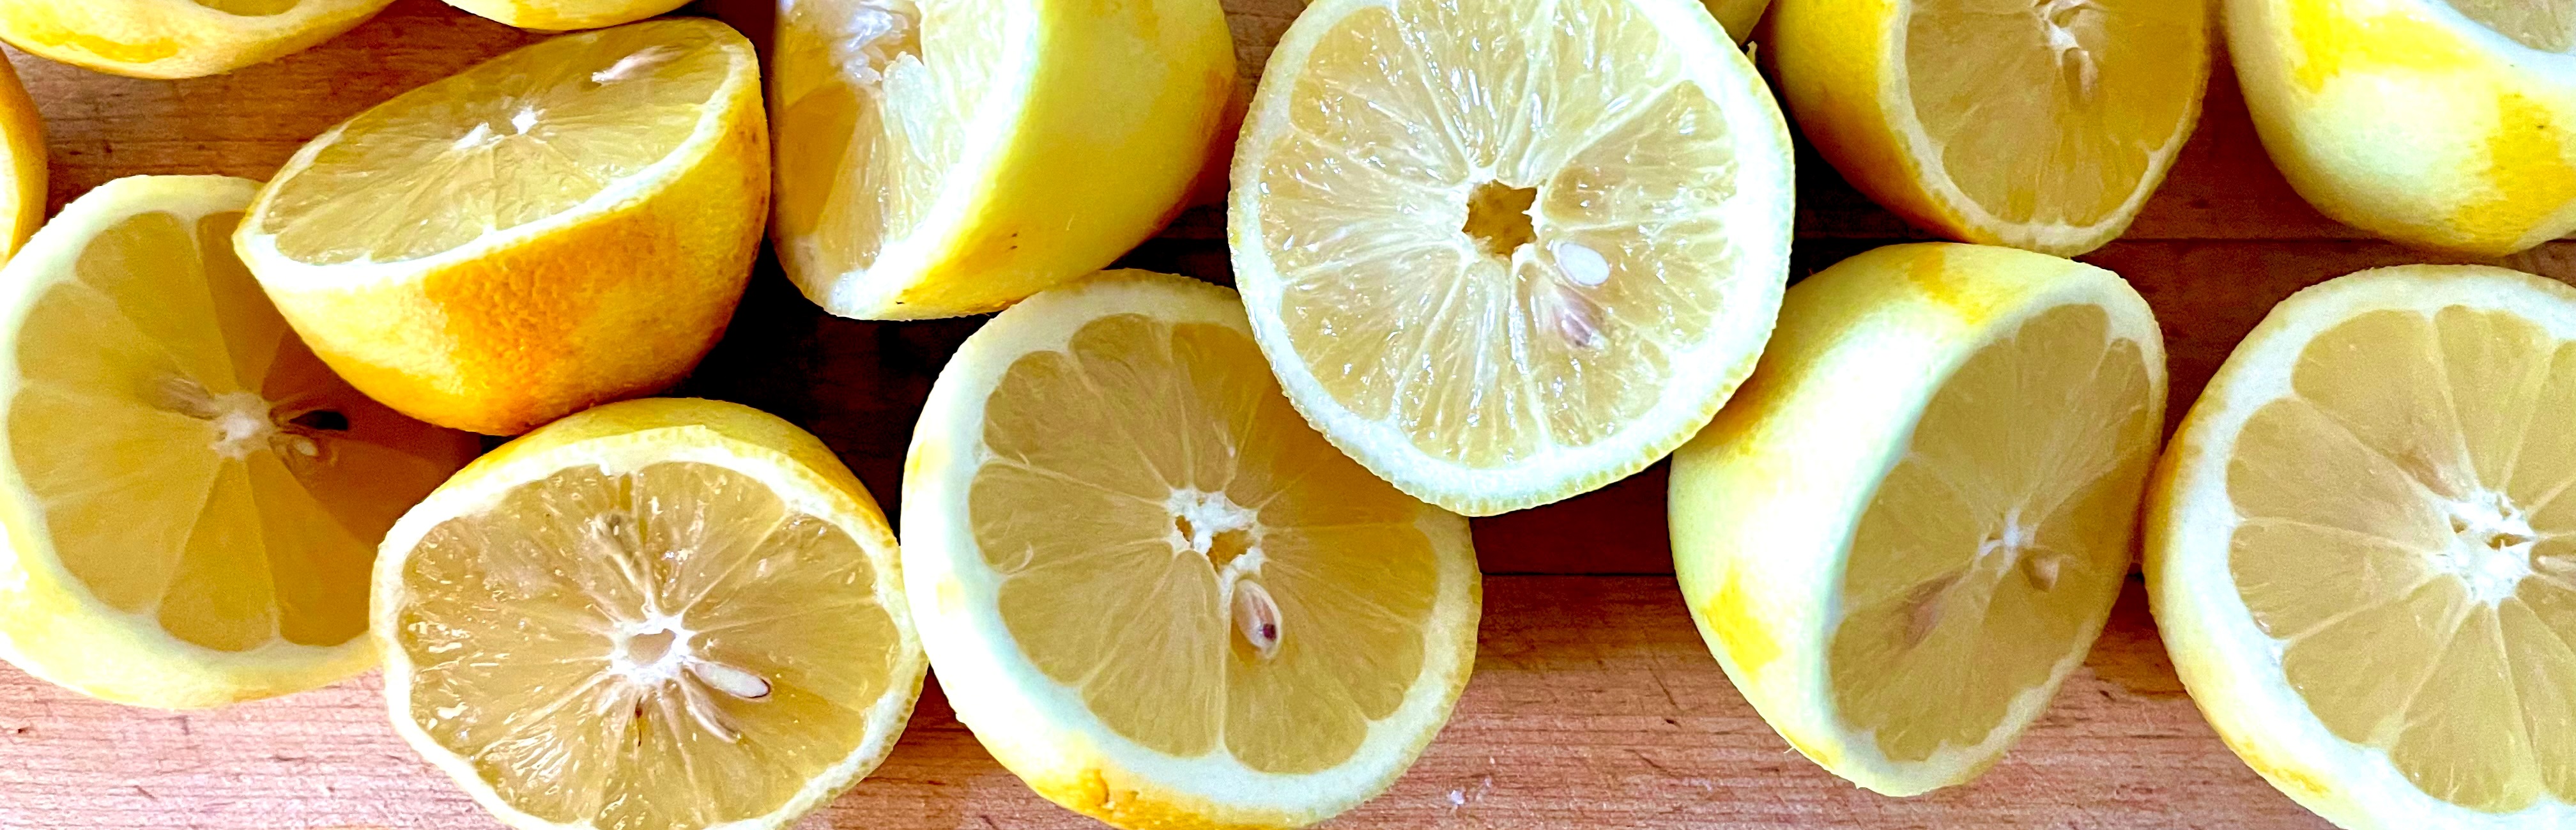 lemons for the perfect sorbet big shor